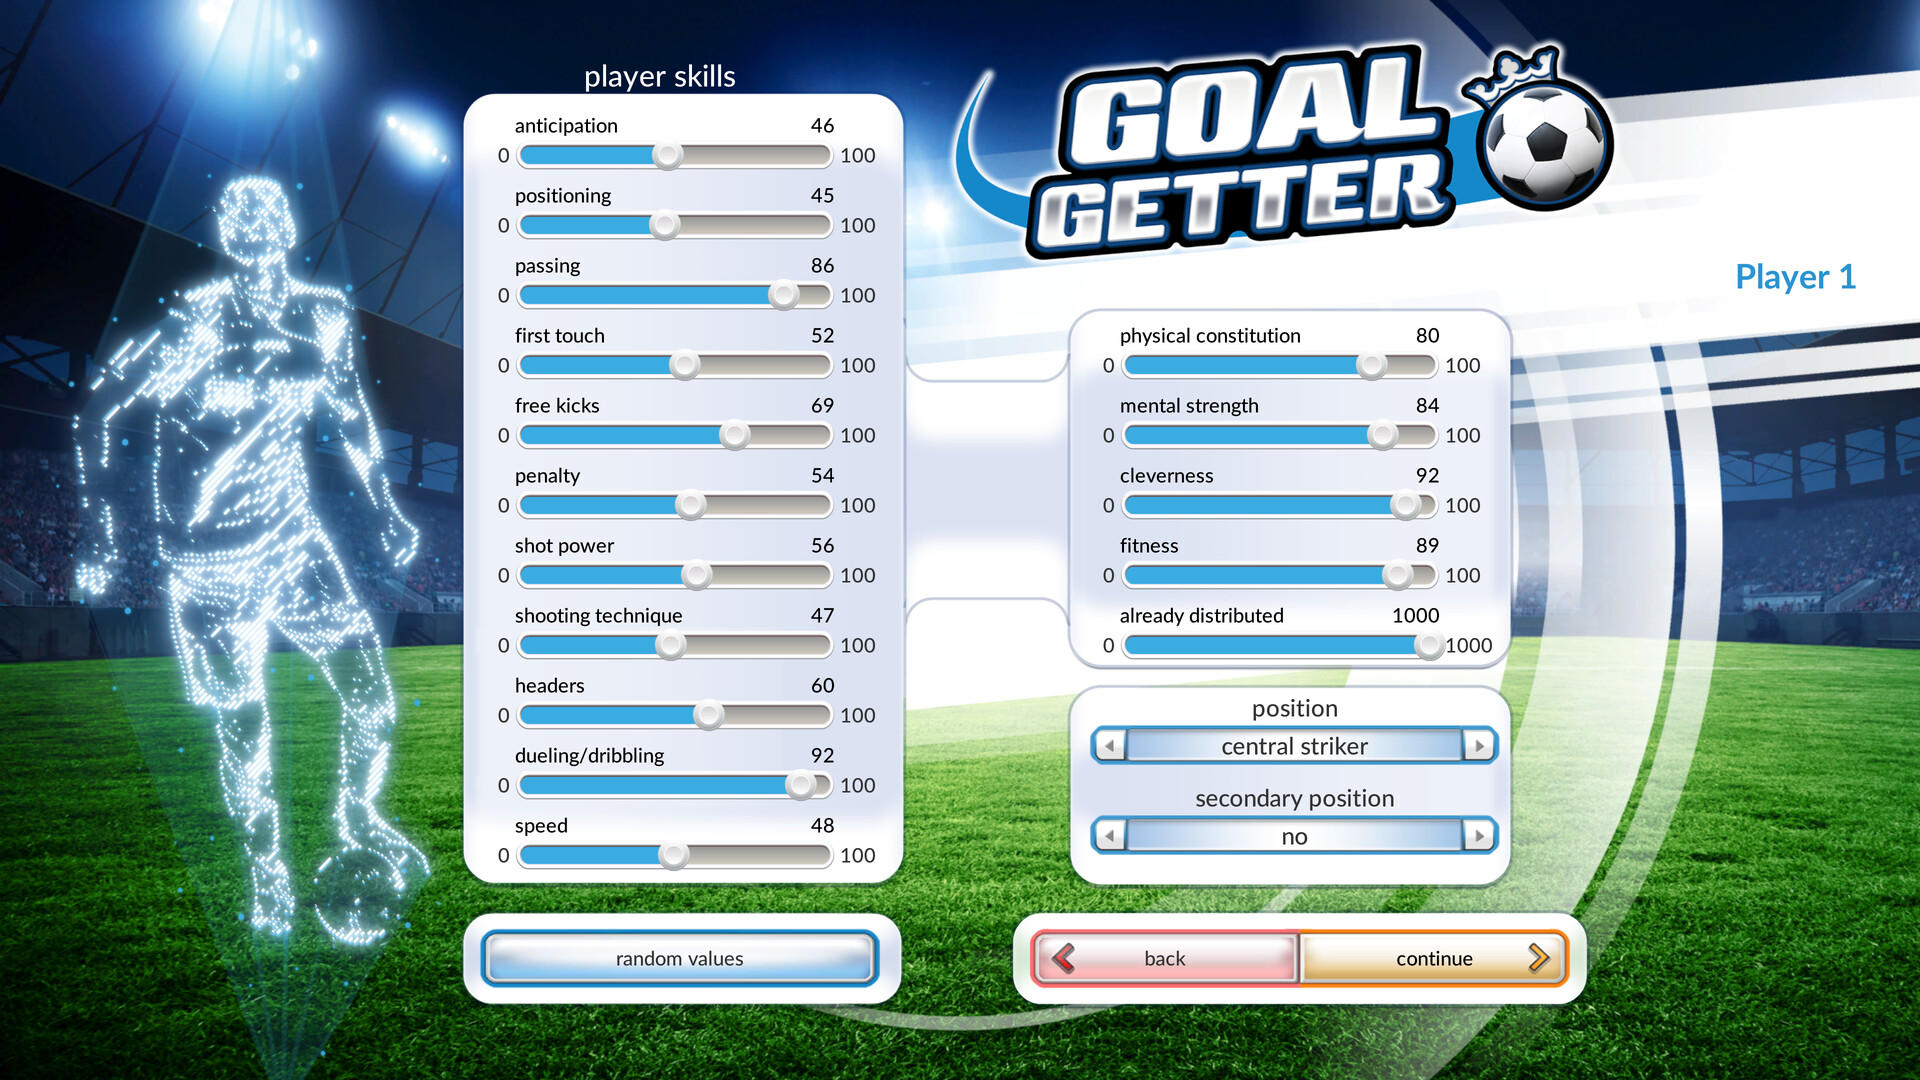 Screenshot of Goalgetter